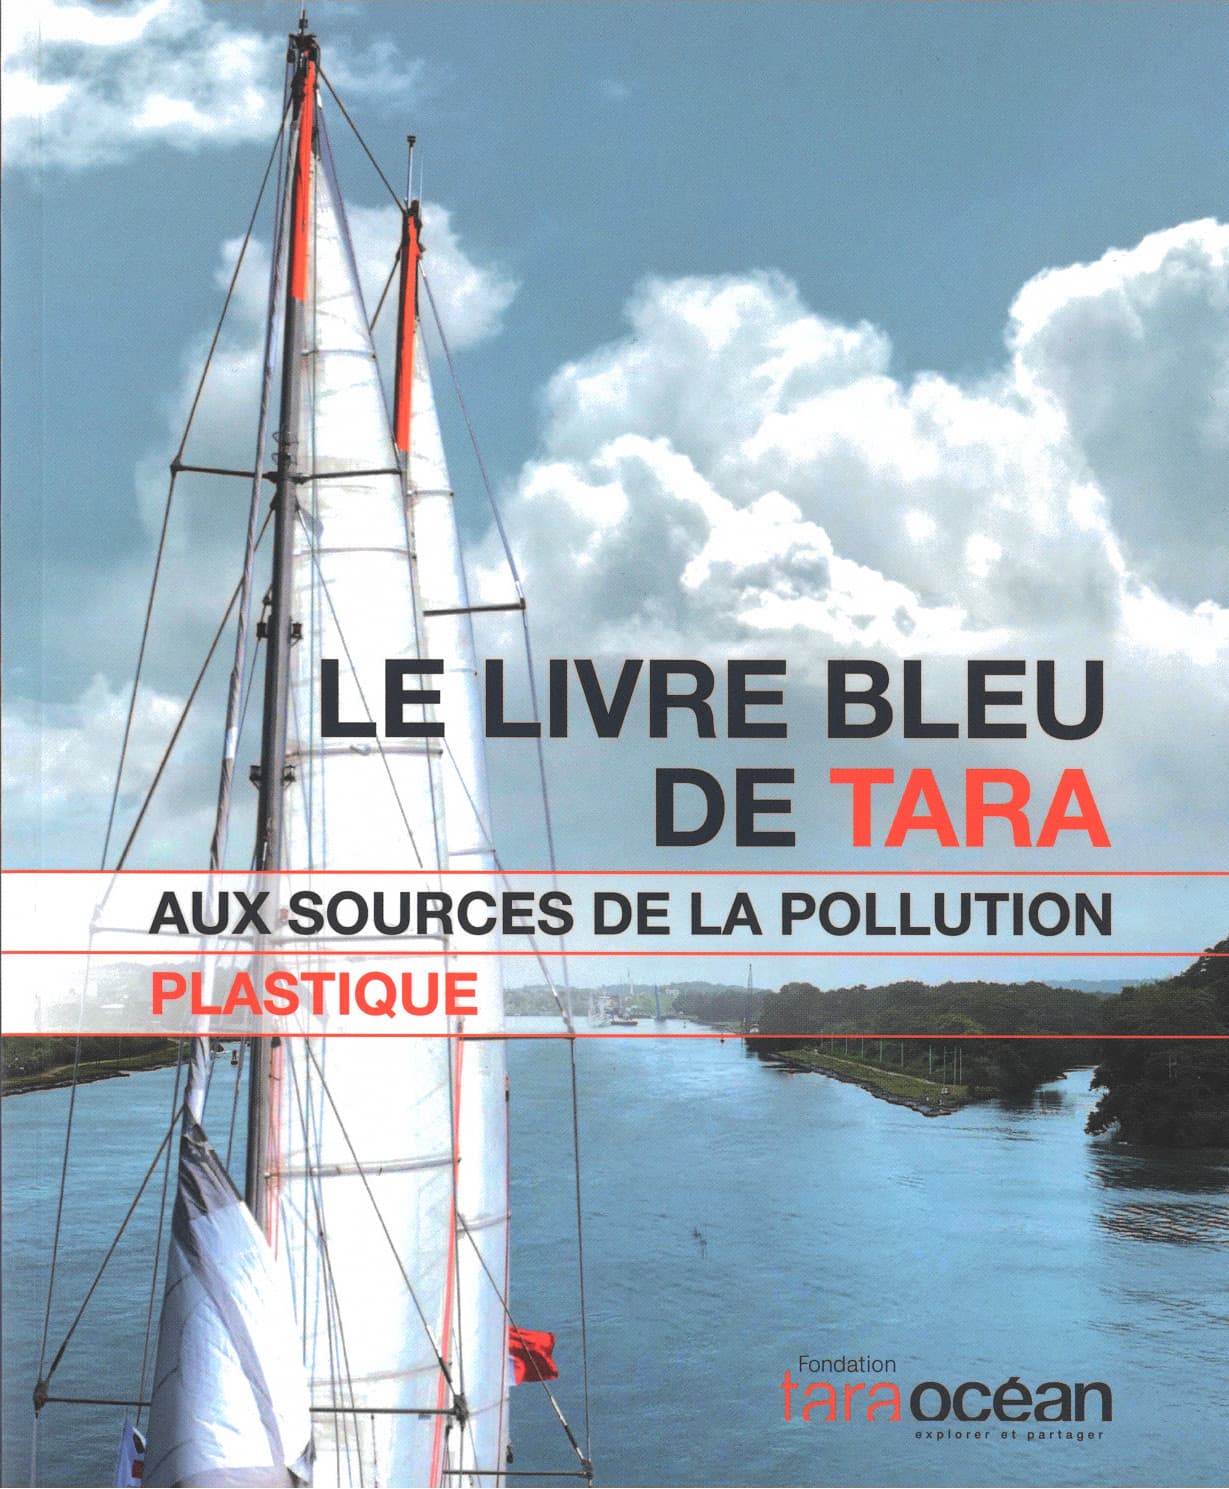 Couverture du livre bleu tara aux sources de la pollution plastique